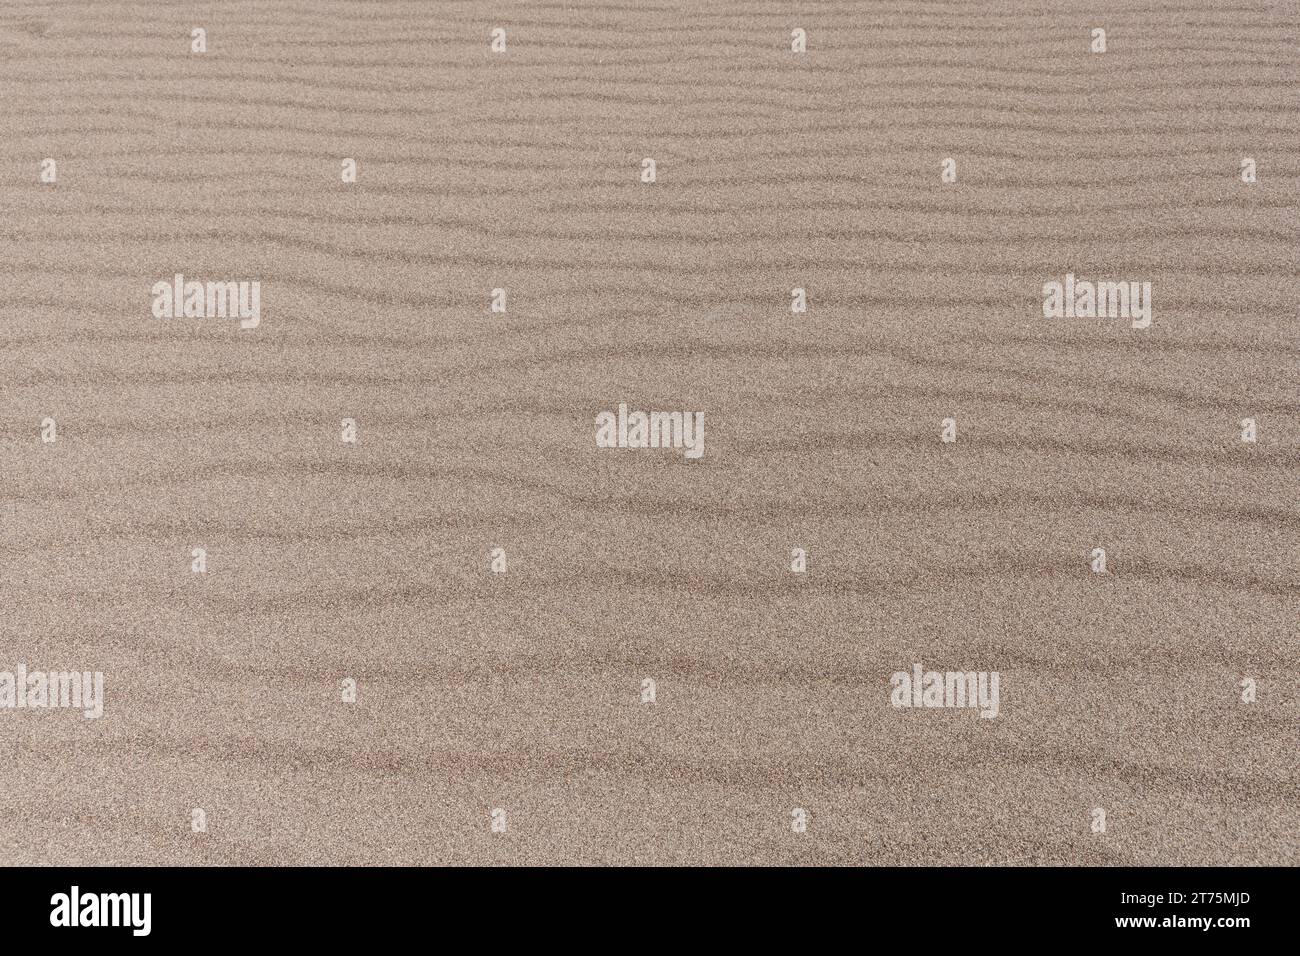 Nahaufnahme von Wüstensand mit einem sich kräuselnden Wellenmuster, das sich horizontal über das Bild erstreckt. Stockfoto